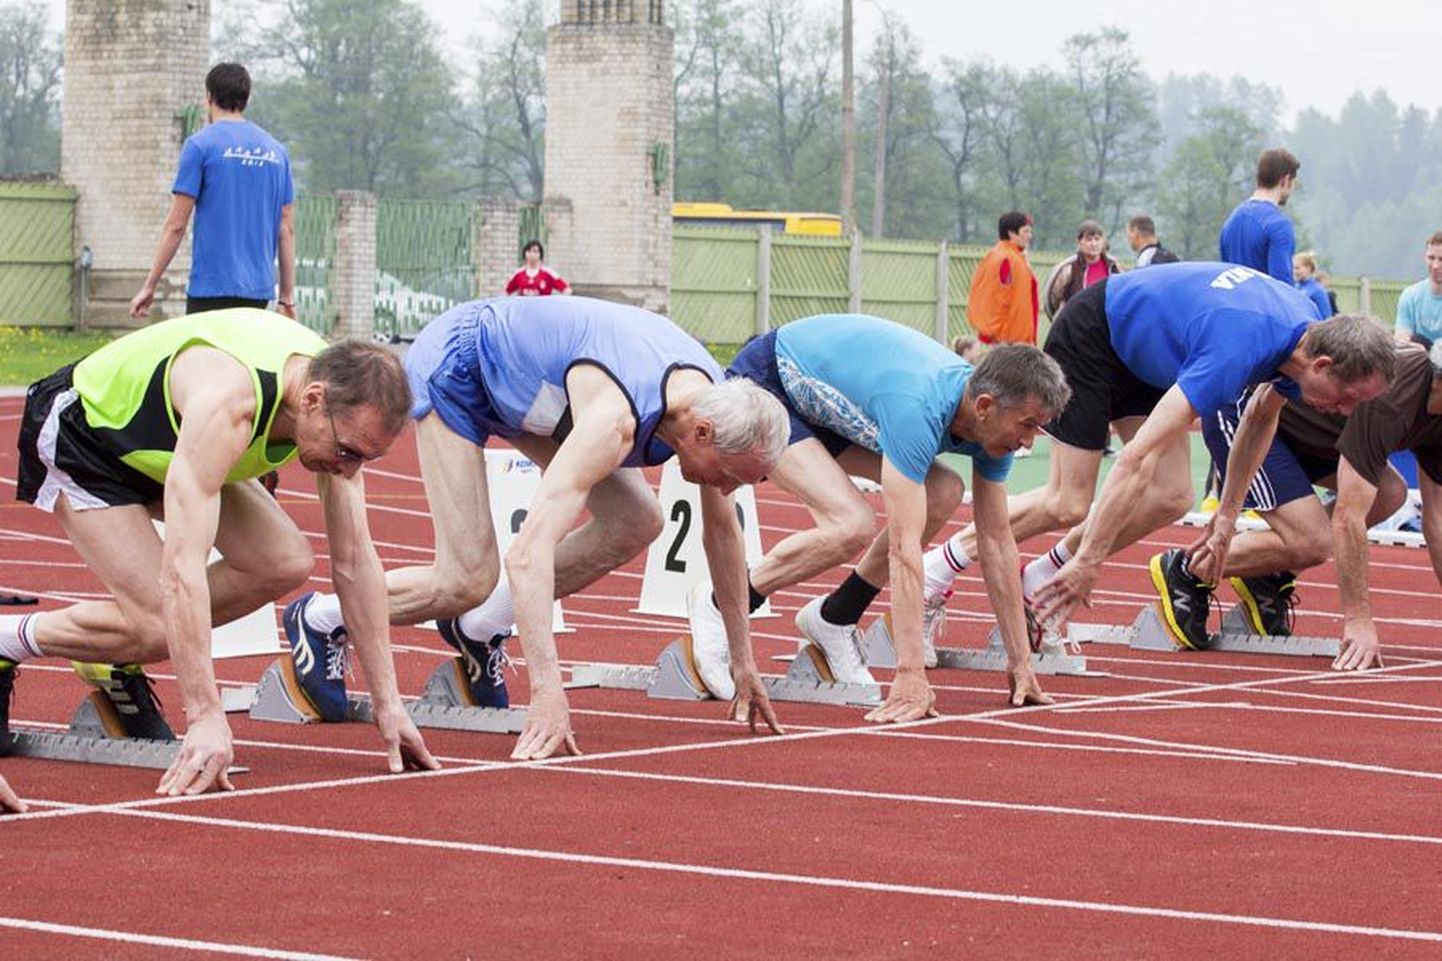 Sakala mängude kergejõustikuvõistlus tõi staadionile nii Eesti koondislasi kui eri tasemel harrastajaid. Pilt on tehtud veteranide M-50 klassi 100 meetri jooksu stardis. Selle võitis Suure-Jaani valla mees Margus Mikkor (vasakult neljas).